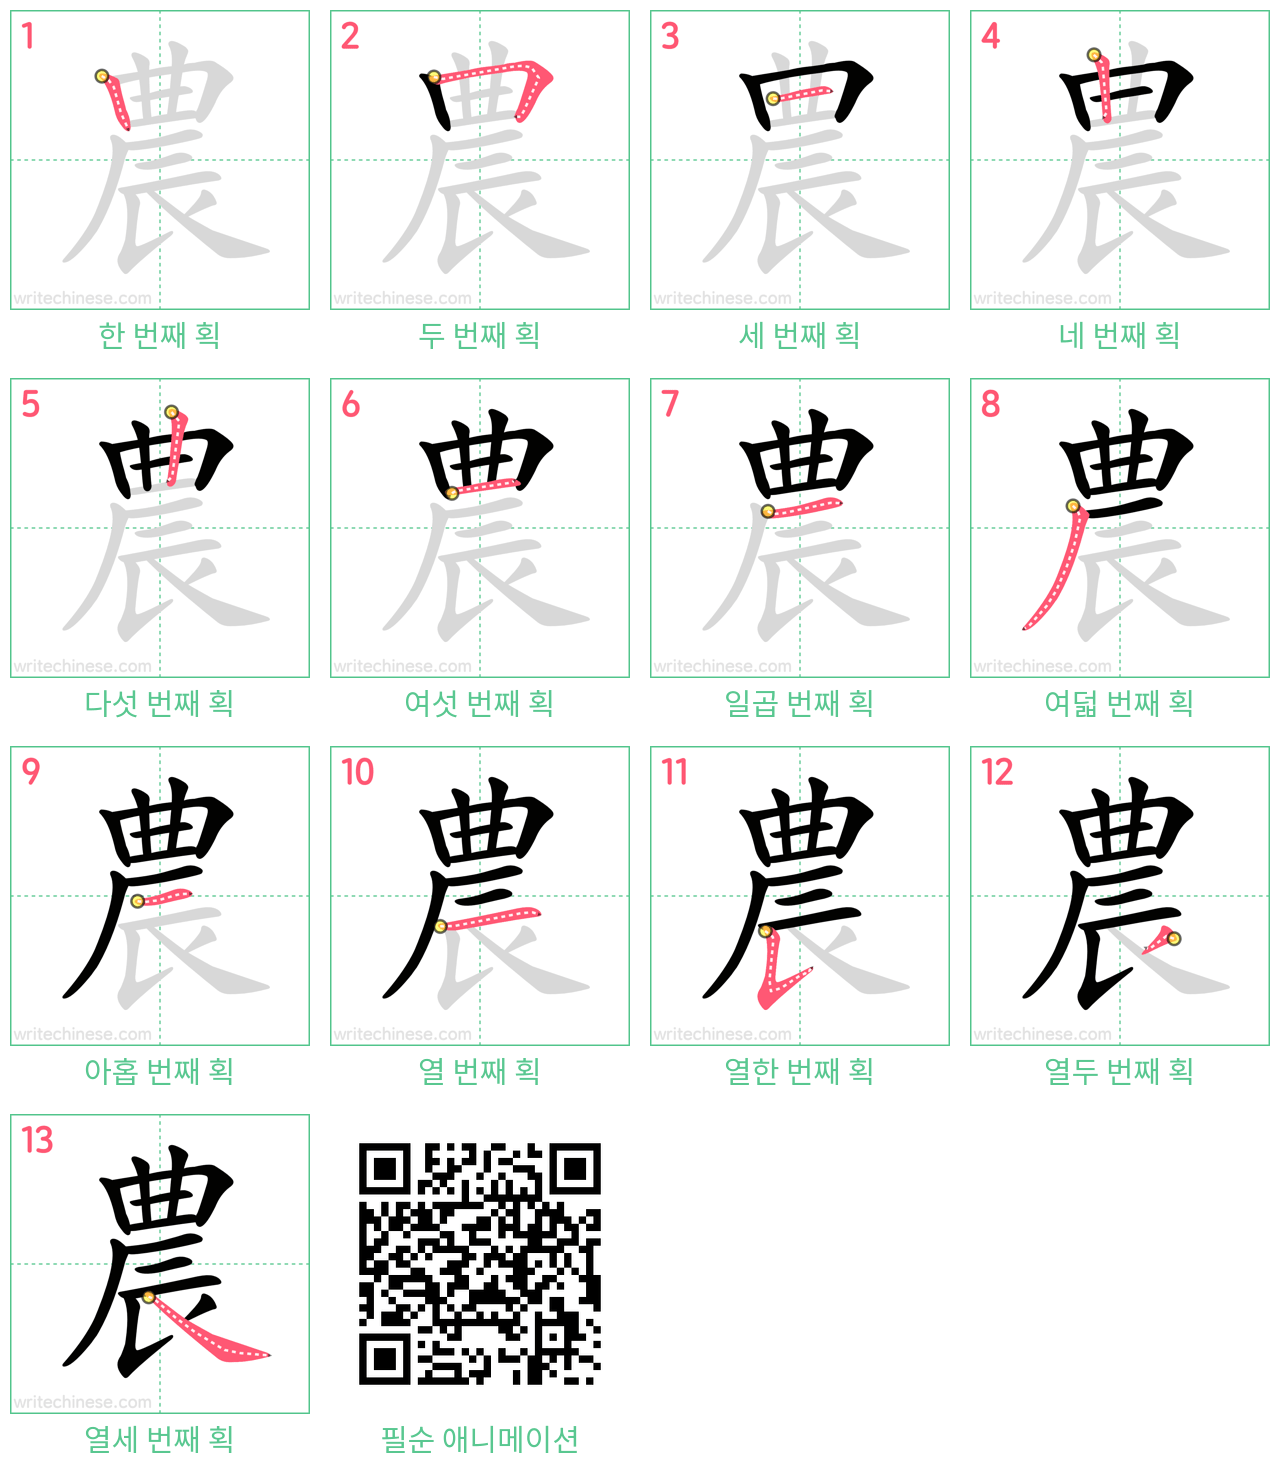 農 step-by-step stroke order diagrams